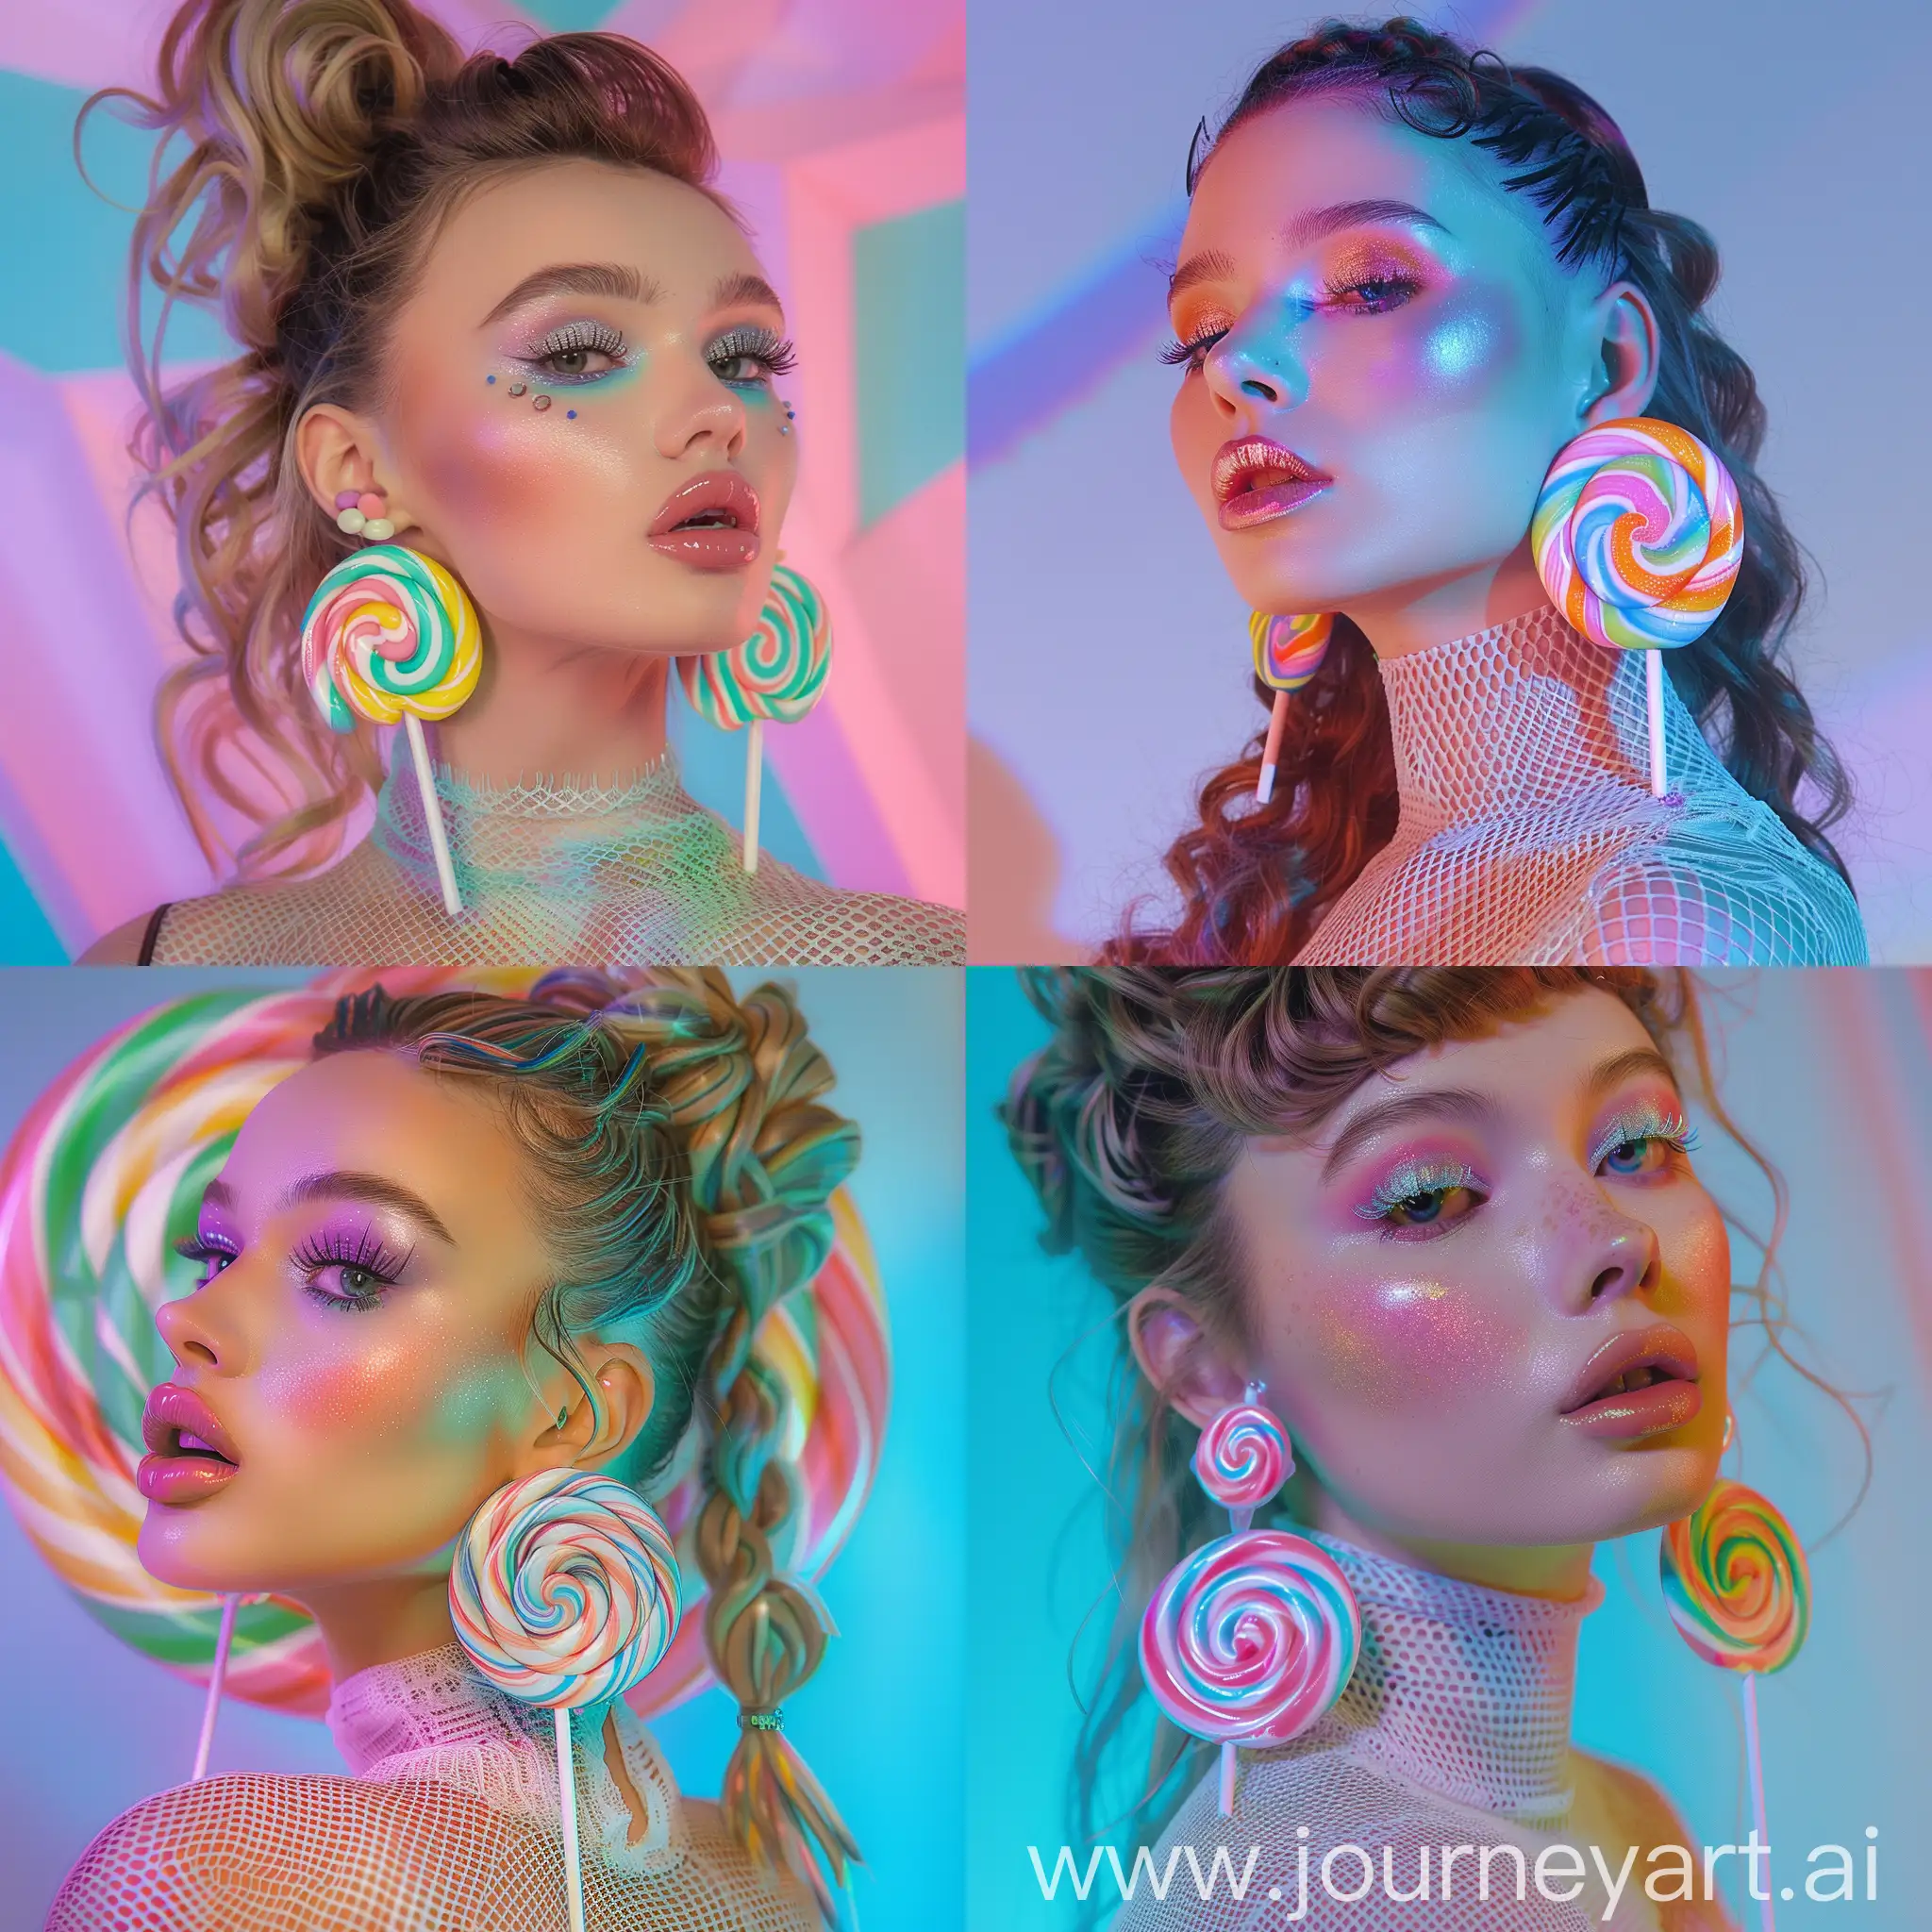 Pastel-Fantasy-HyperRealistic-Model-in-Lollipop-Earrings-and-Fishnet-Top